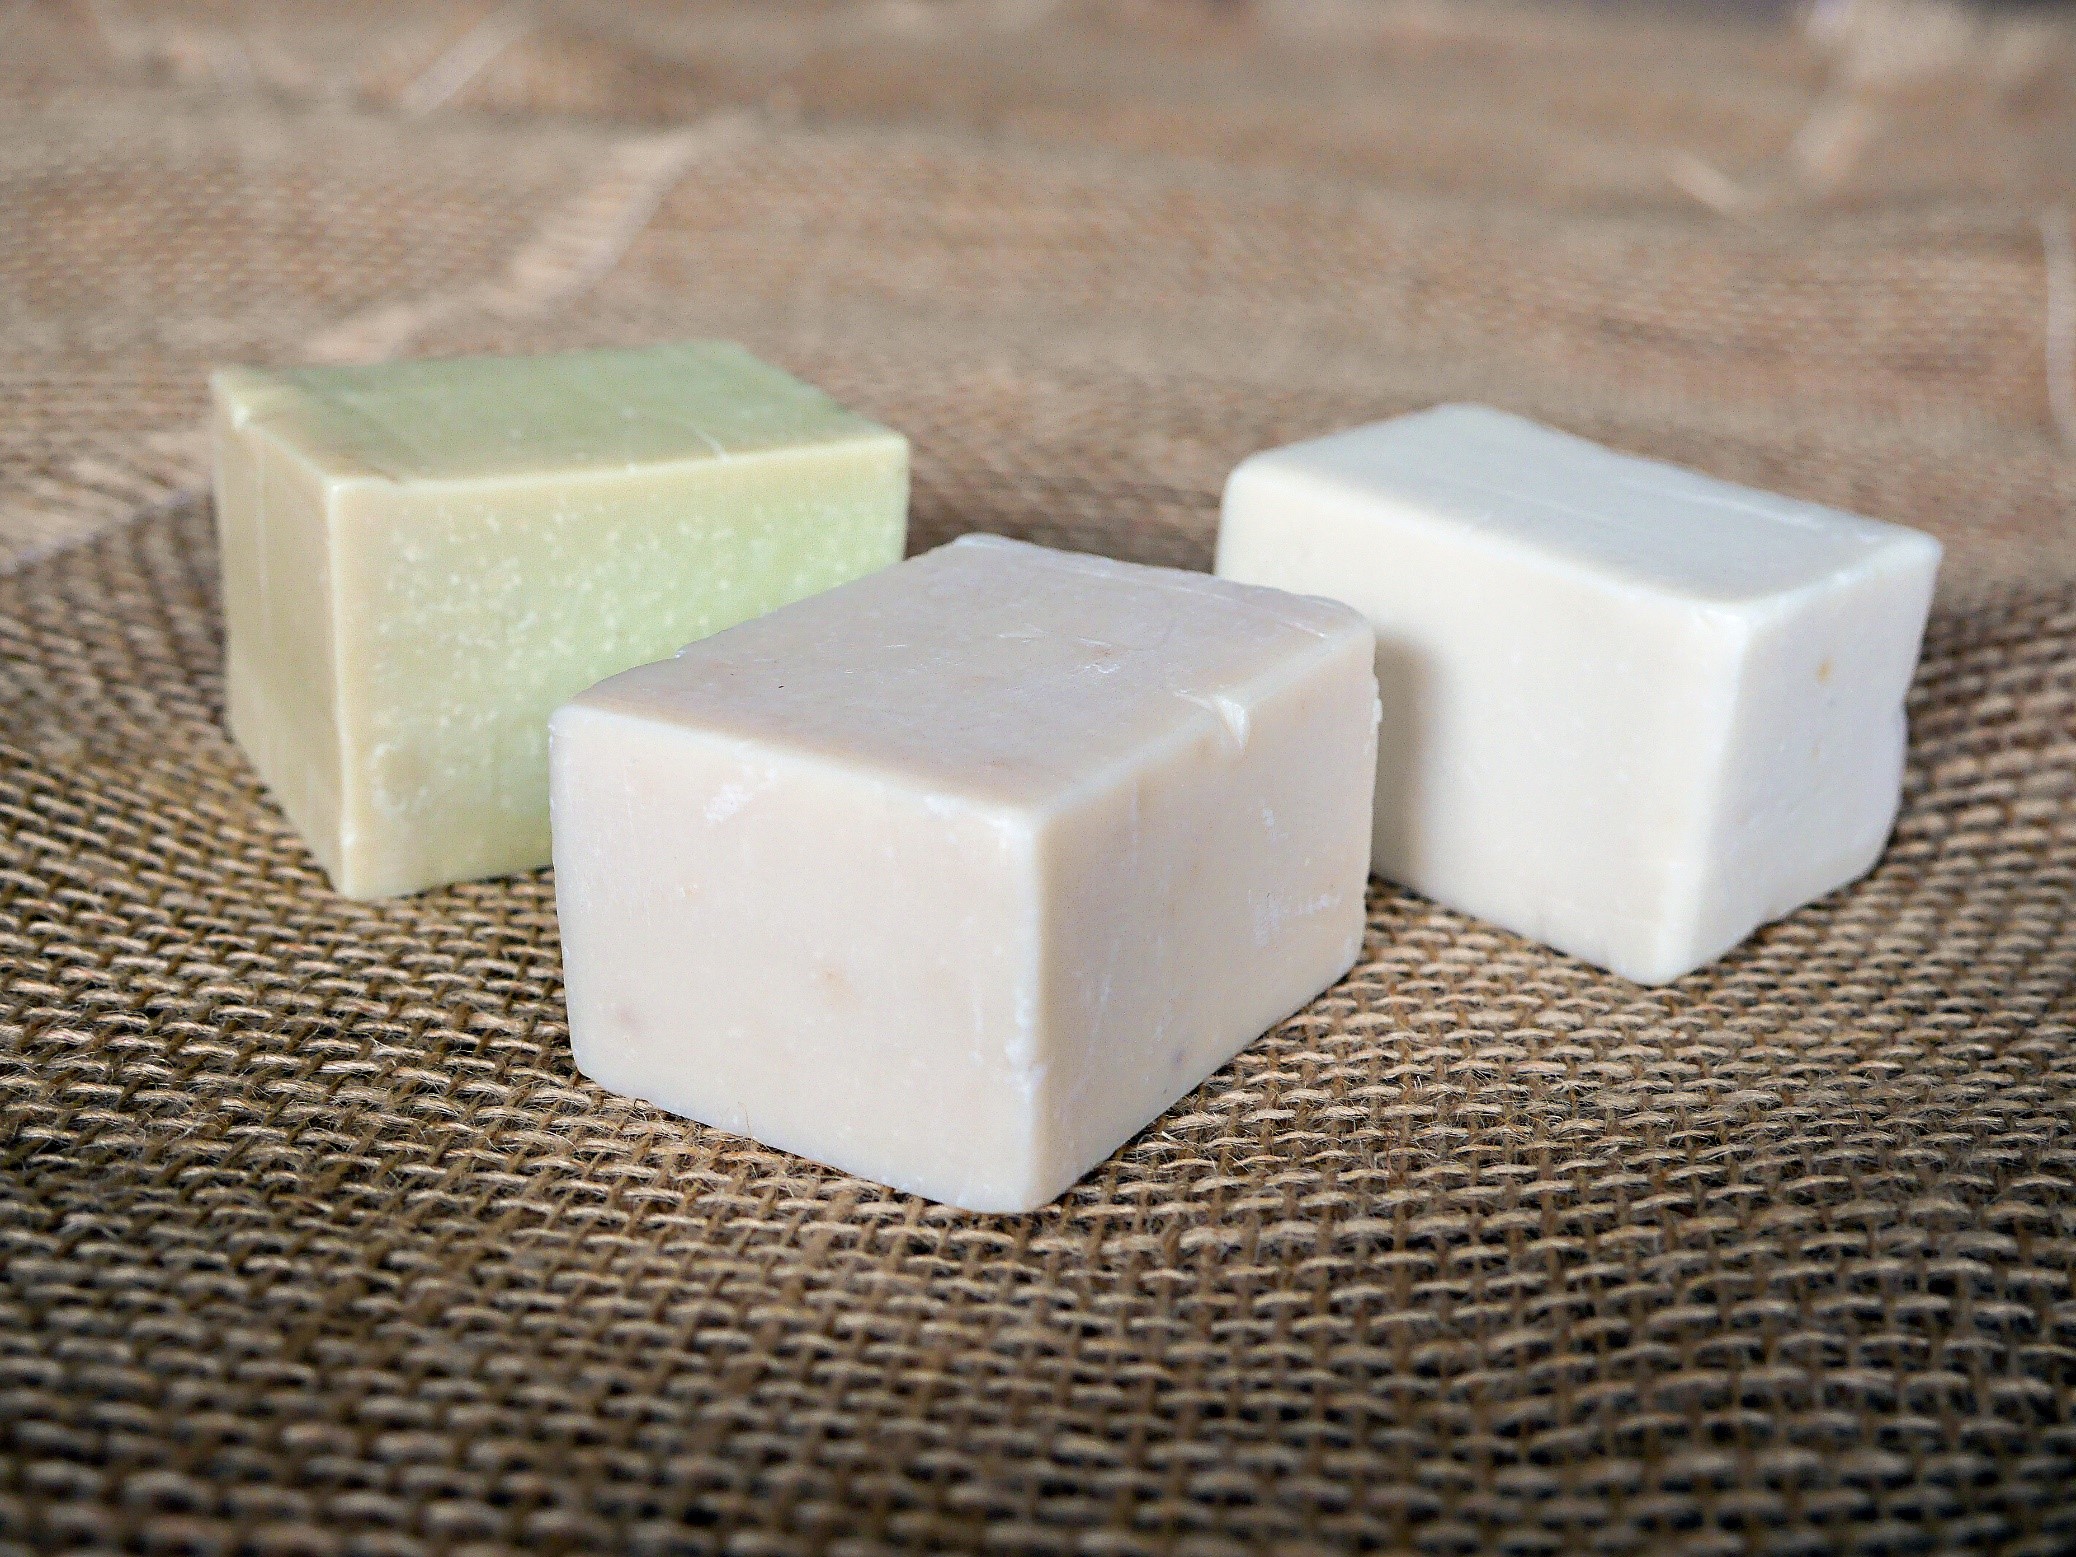 Les savons au beurre de karité sont très appréciés. Ils sont élaborés avec divers additifs naturels aux arômes parfumés.